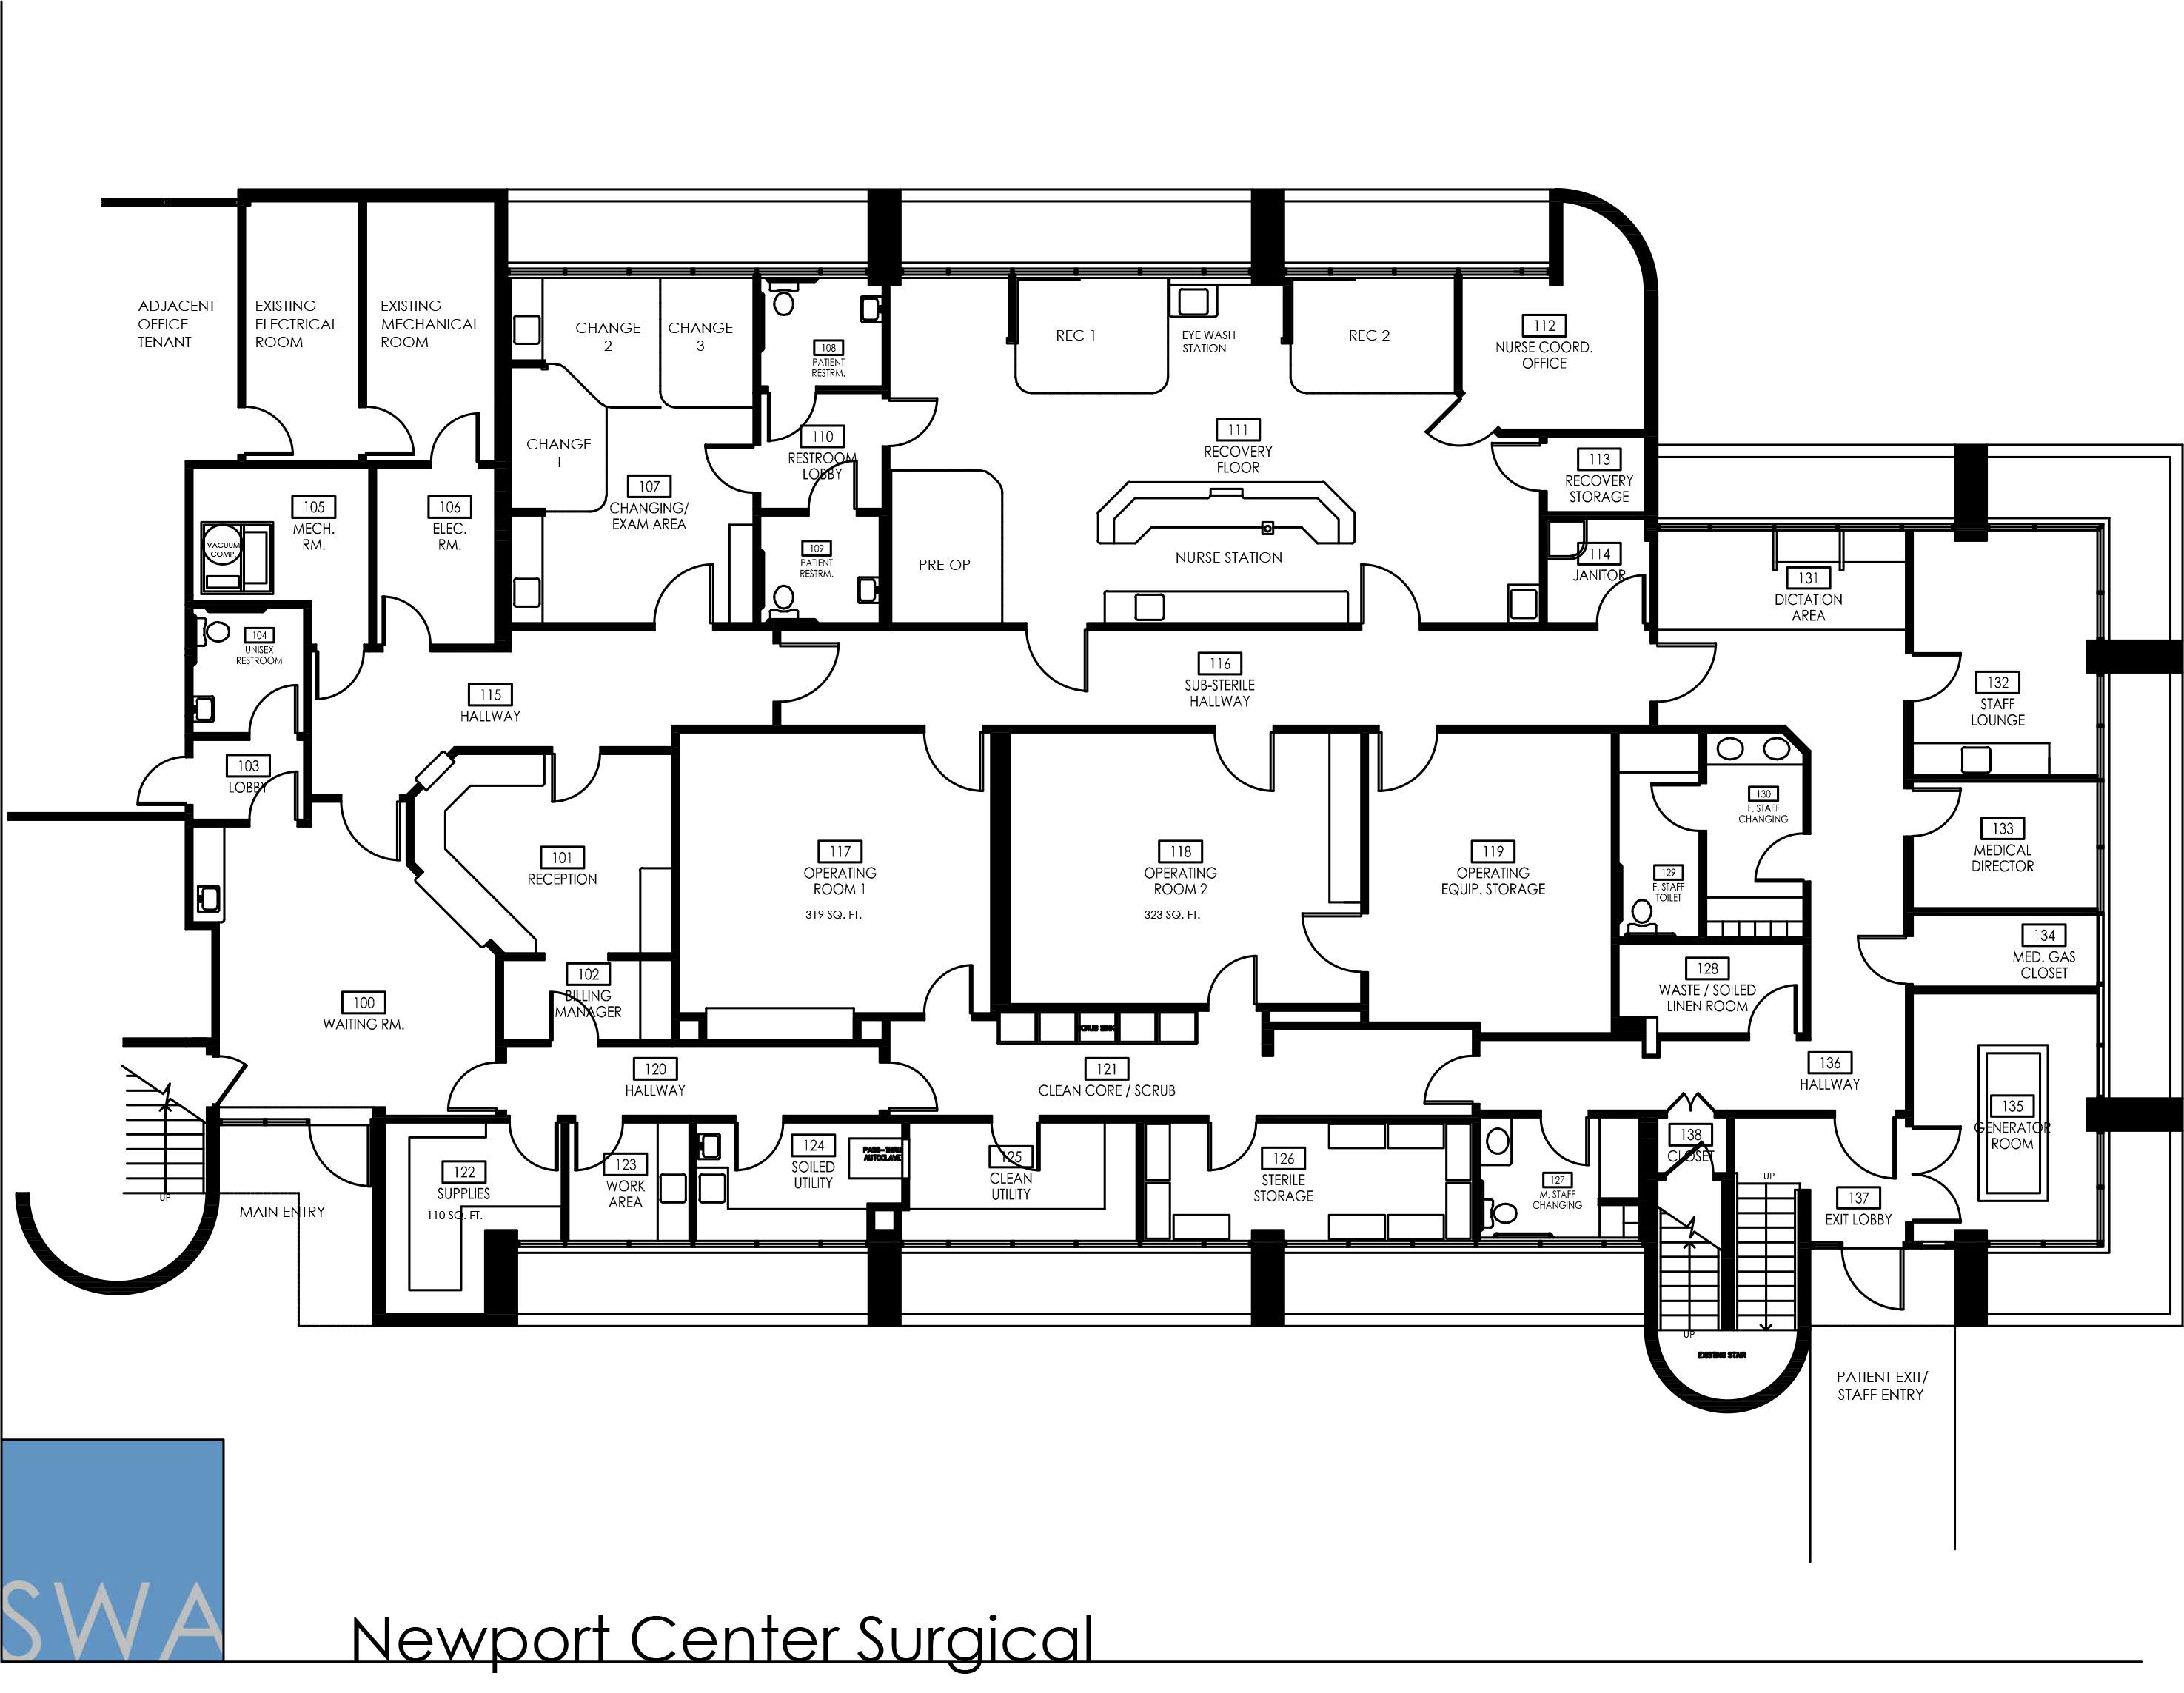 Newport Center Surgical Hospital floor plan, Surgery